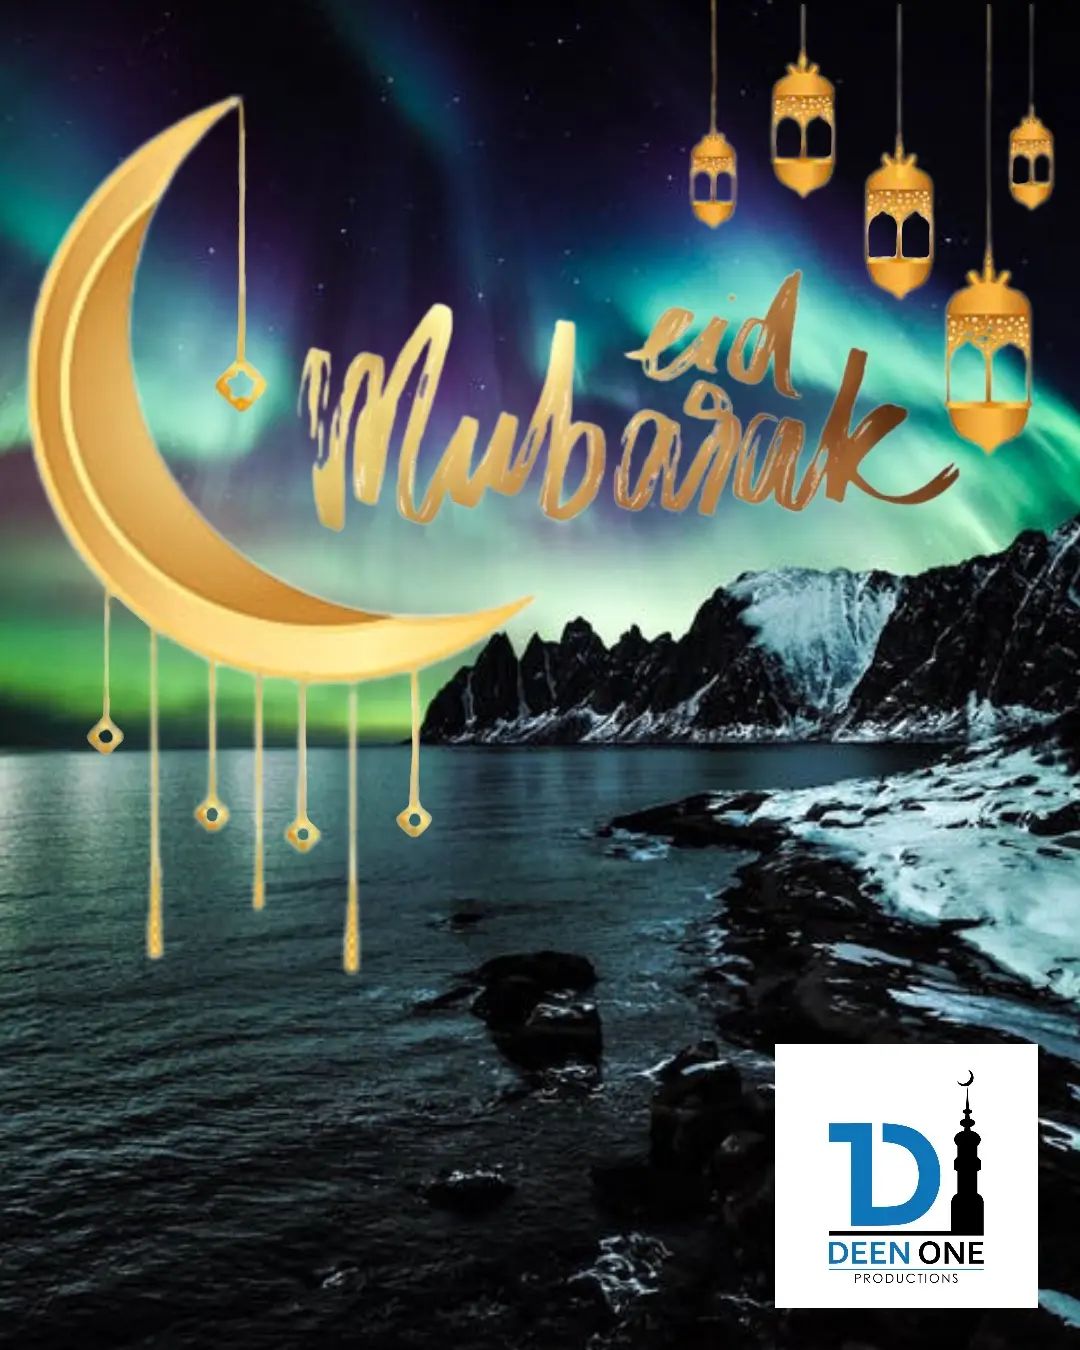 Eid Mubarak from Deen One!  Stay tuned for new content coming soon inshaAllah!  #deenone #deen #islam #muslim #muslimah #eid #eidaladha #eidmubarak